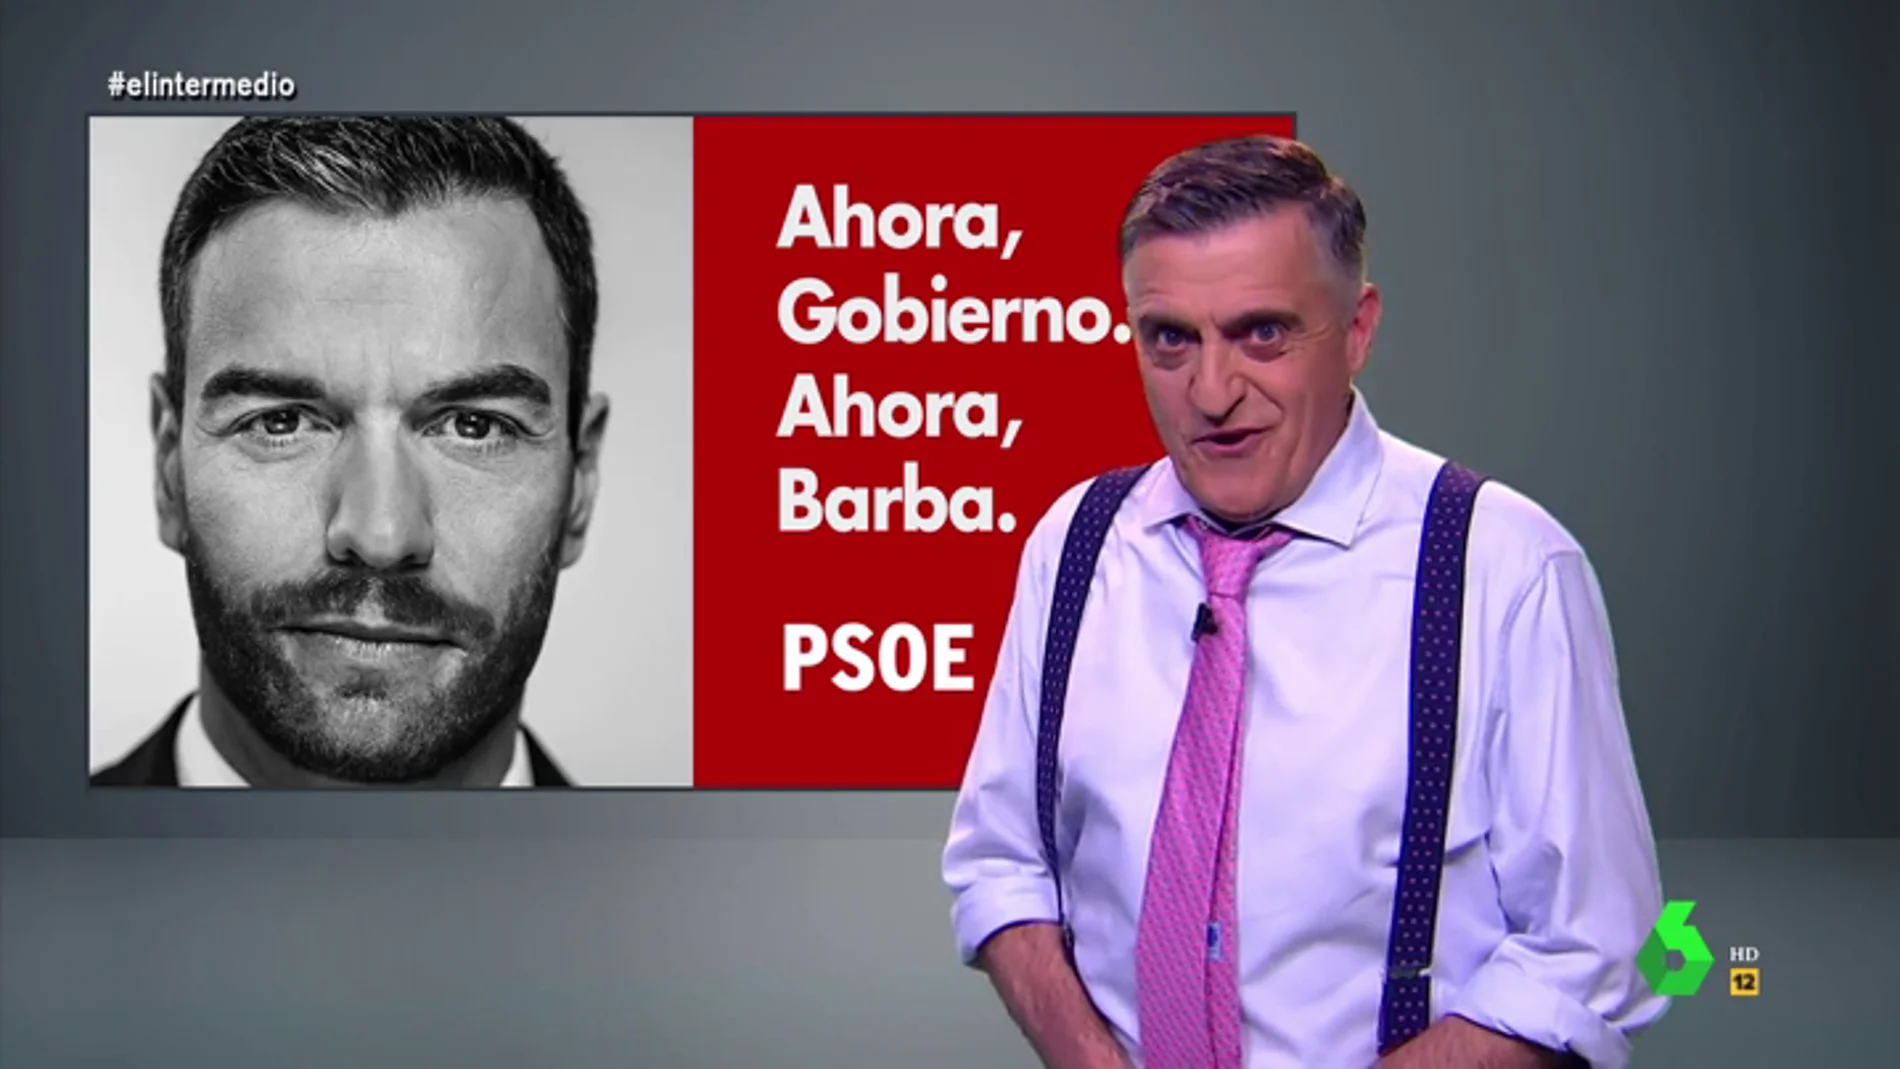 "Ahora Gobierno, ahora barba": la campaña de El Intermedio